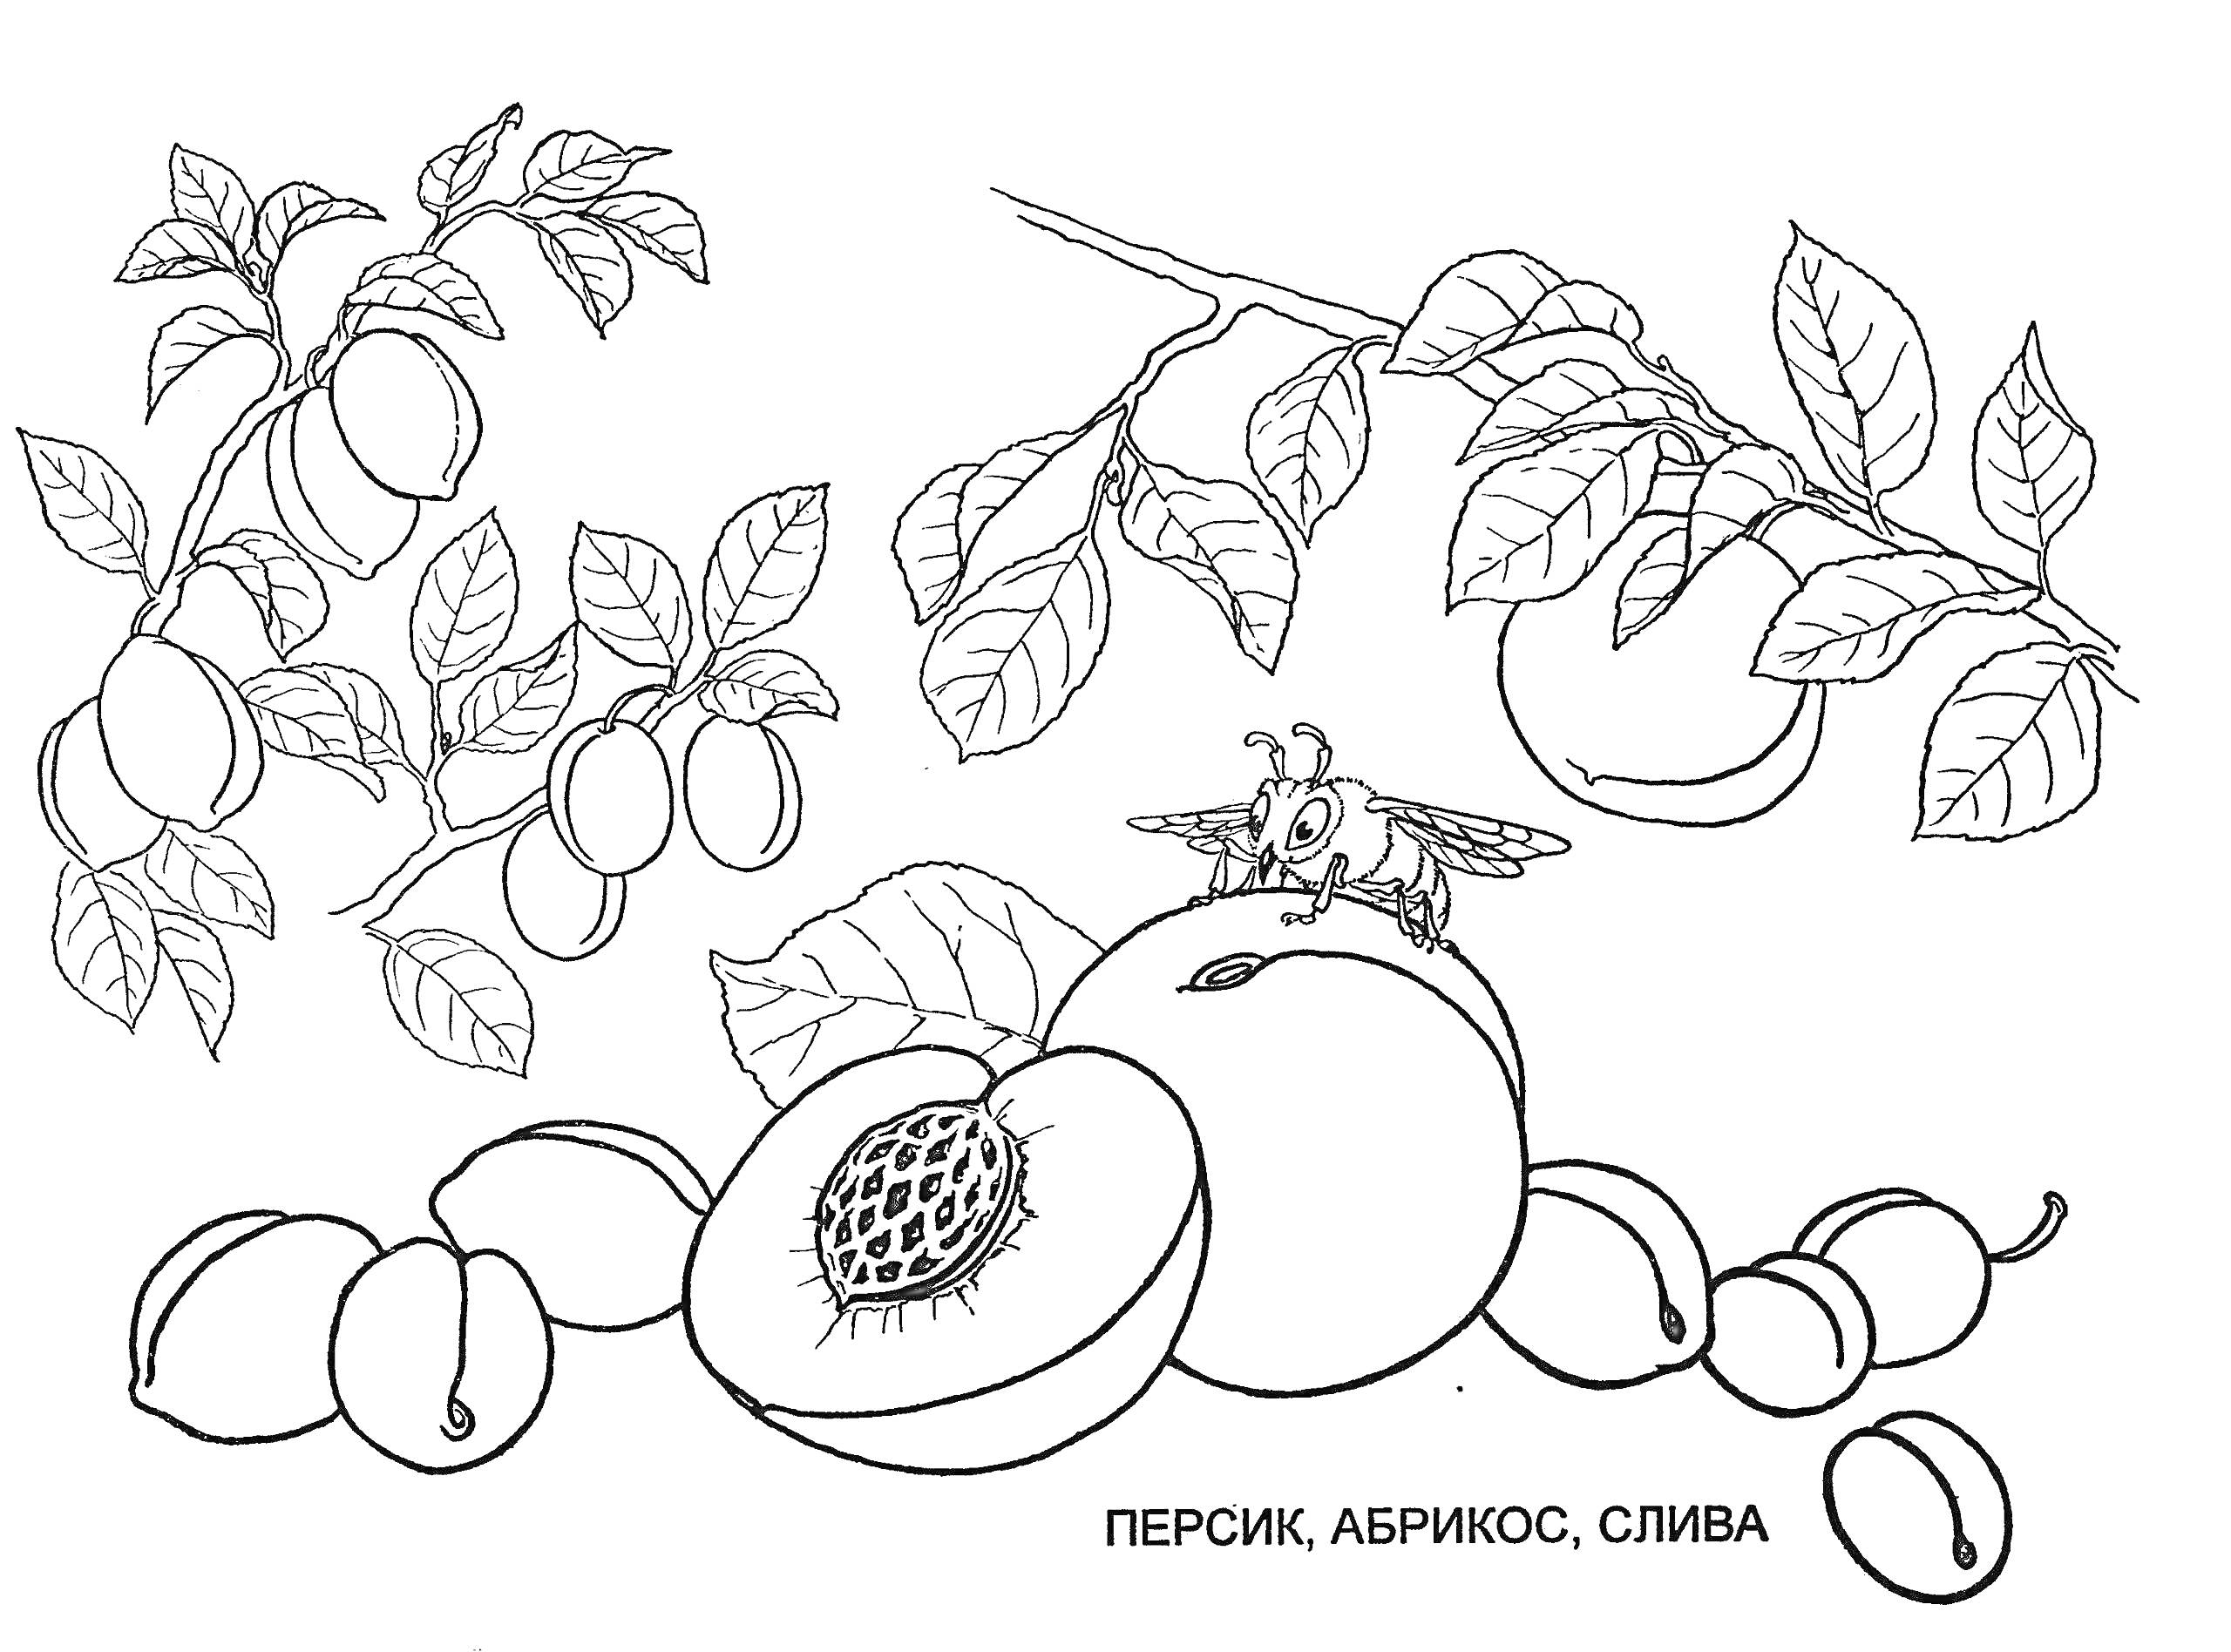 Персик, абрикос, слива на ветке и слива на земле, разрезанный персик с косточкой, пчела на половинке персика